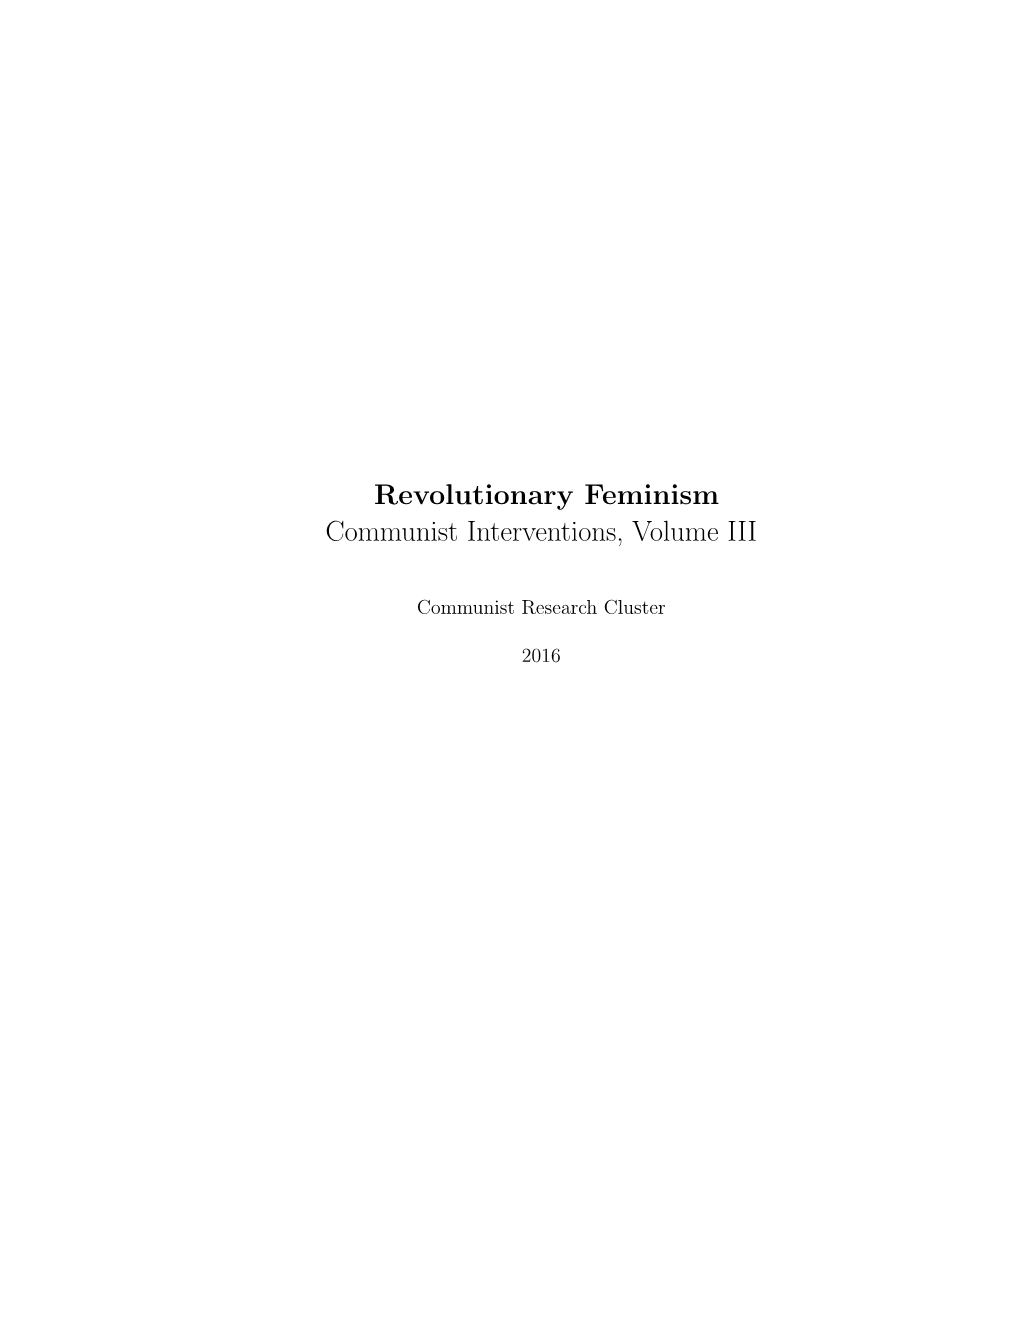 Revolutionary Feminism Communist Interventions, Volume III